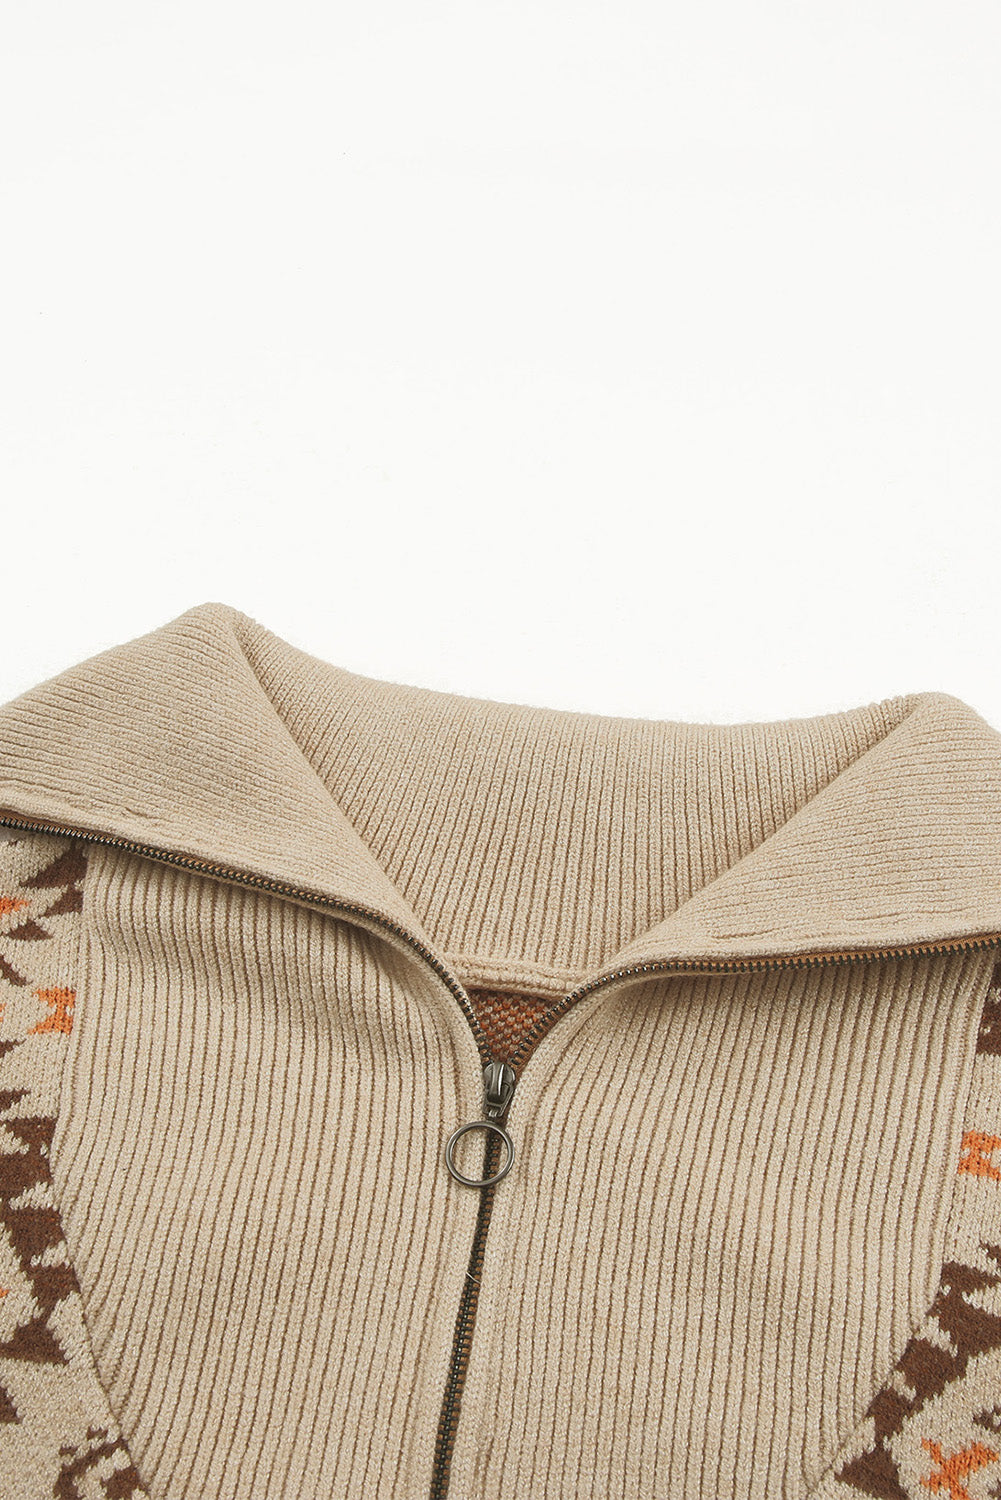 Khakifarbener aztekischer Strickpullover mit überschnittener Schulter und Reißverschluss